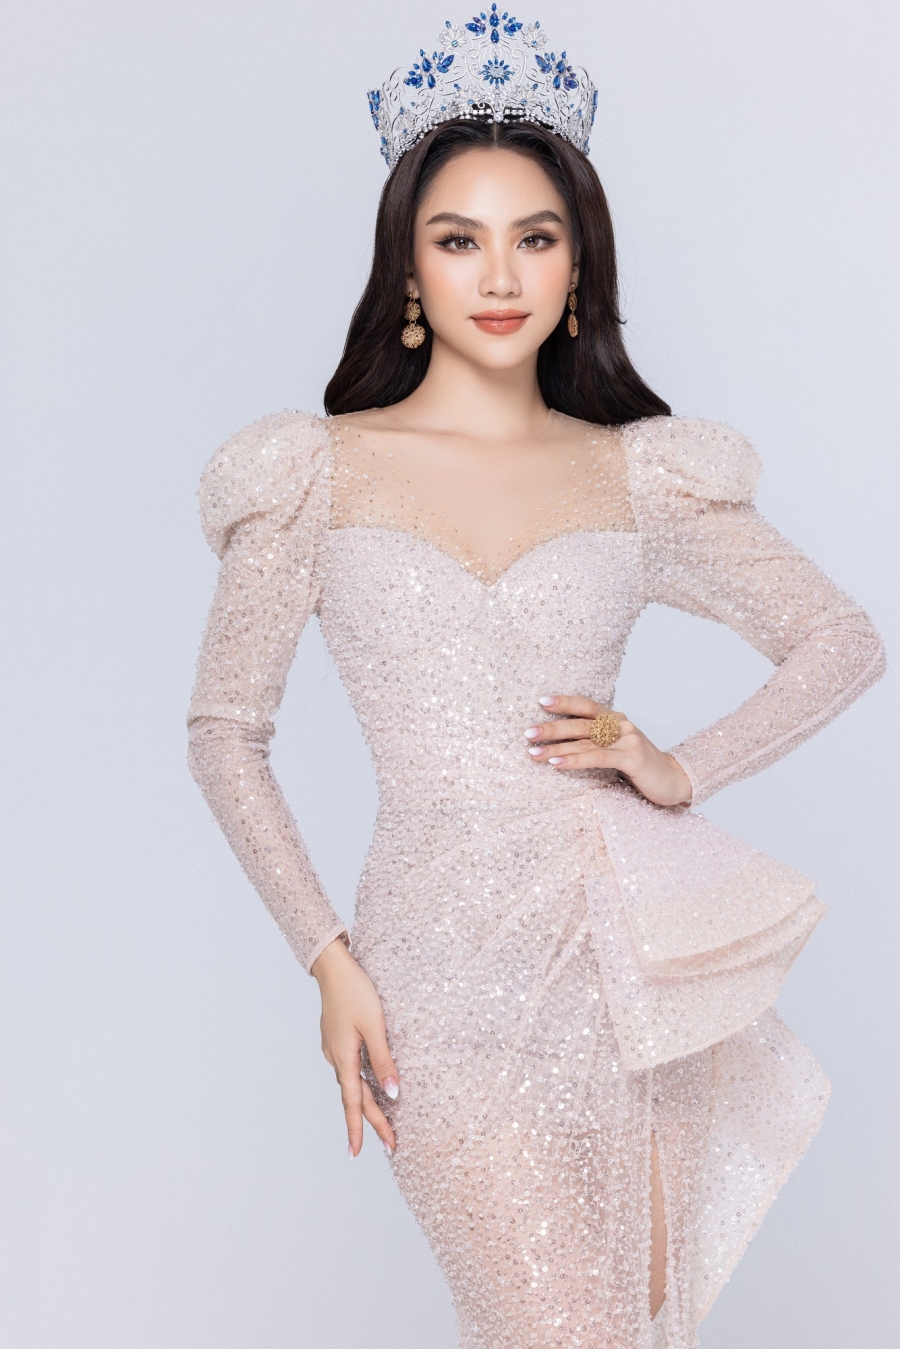 Hoa hậu Mai Phương nhận được sự ủng hộ của đông đảo người hâm mộ sắc đẹp khi đăng quang Miss World Vietnam 2022.